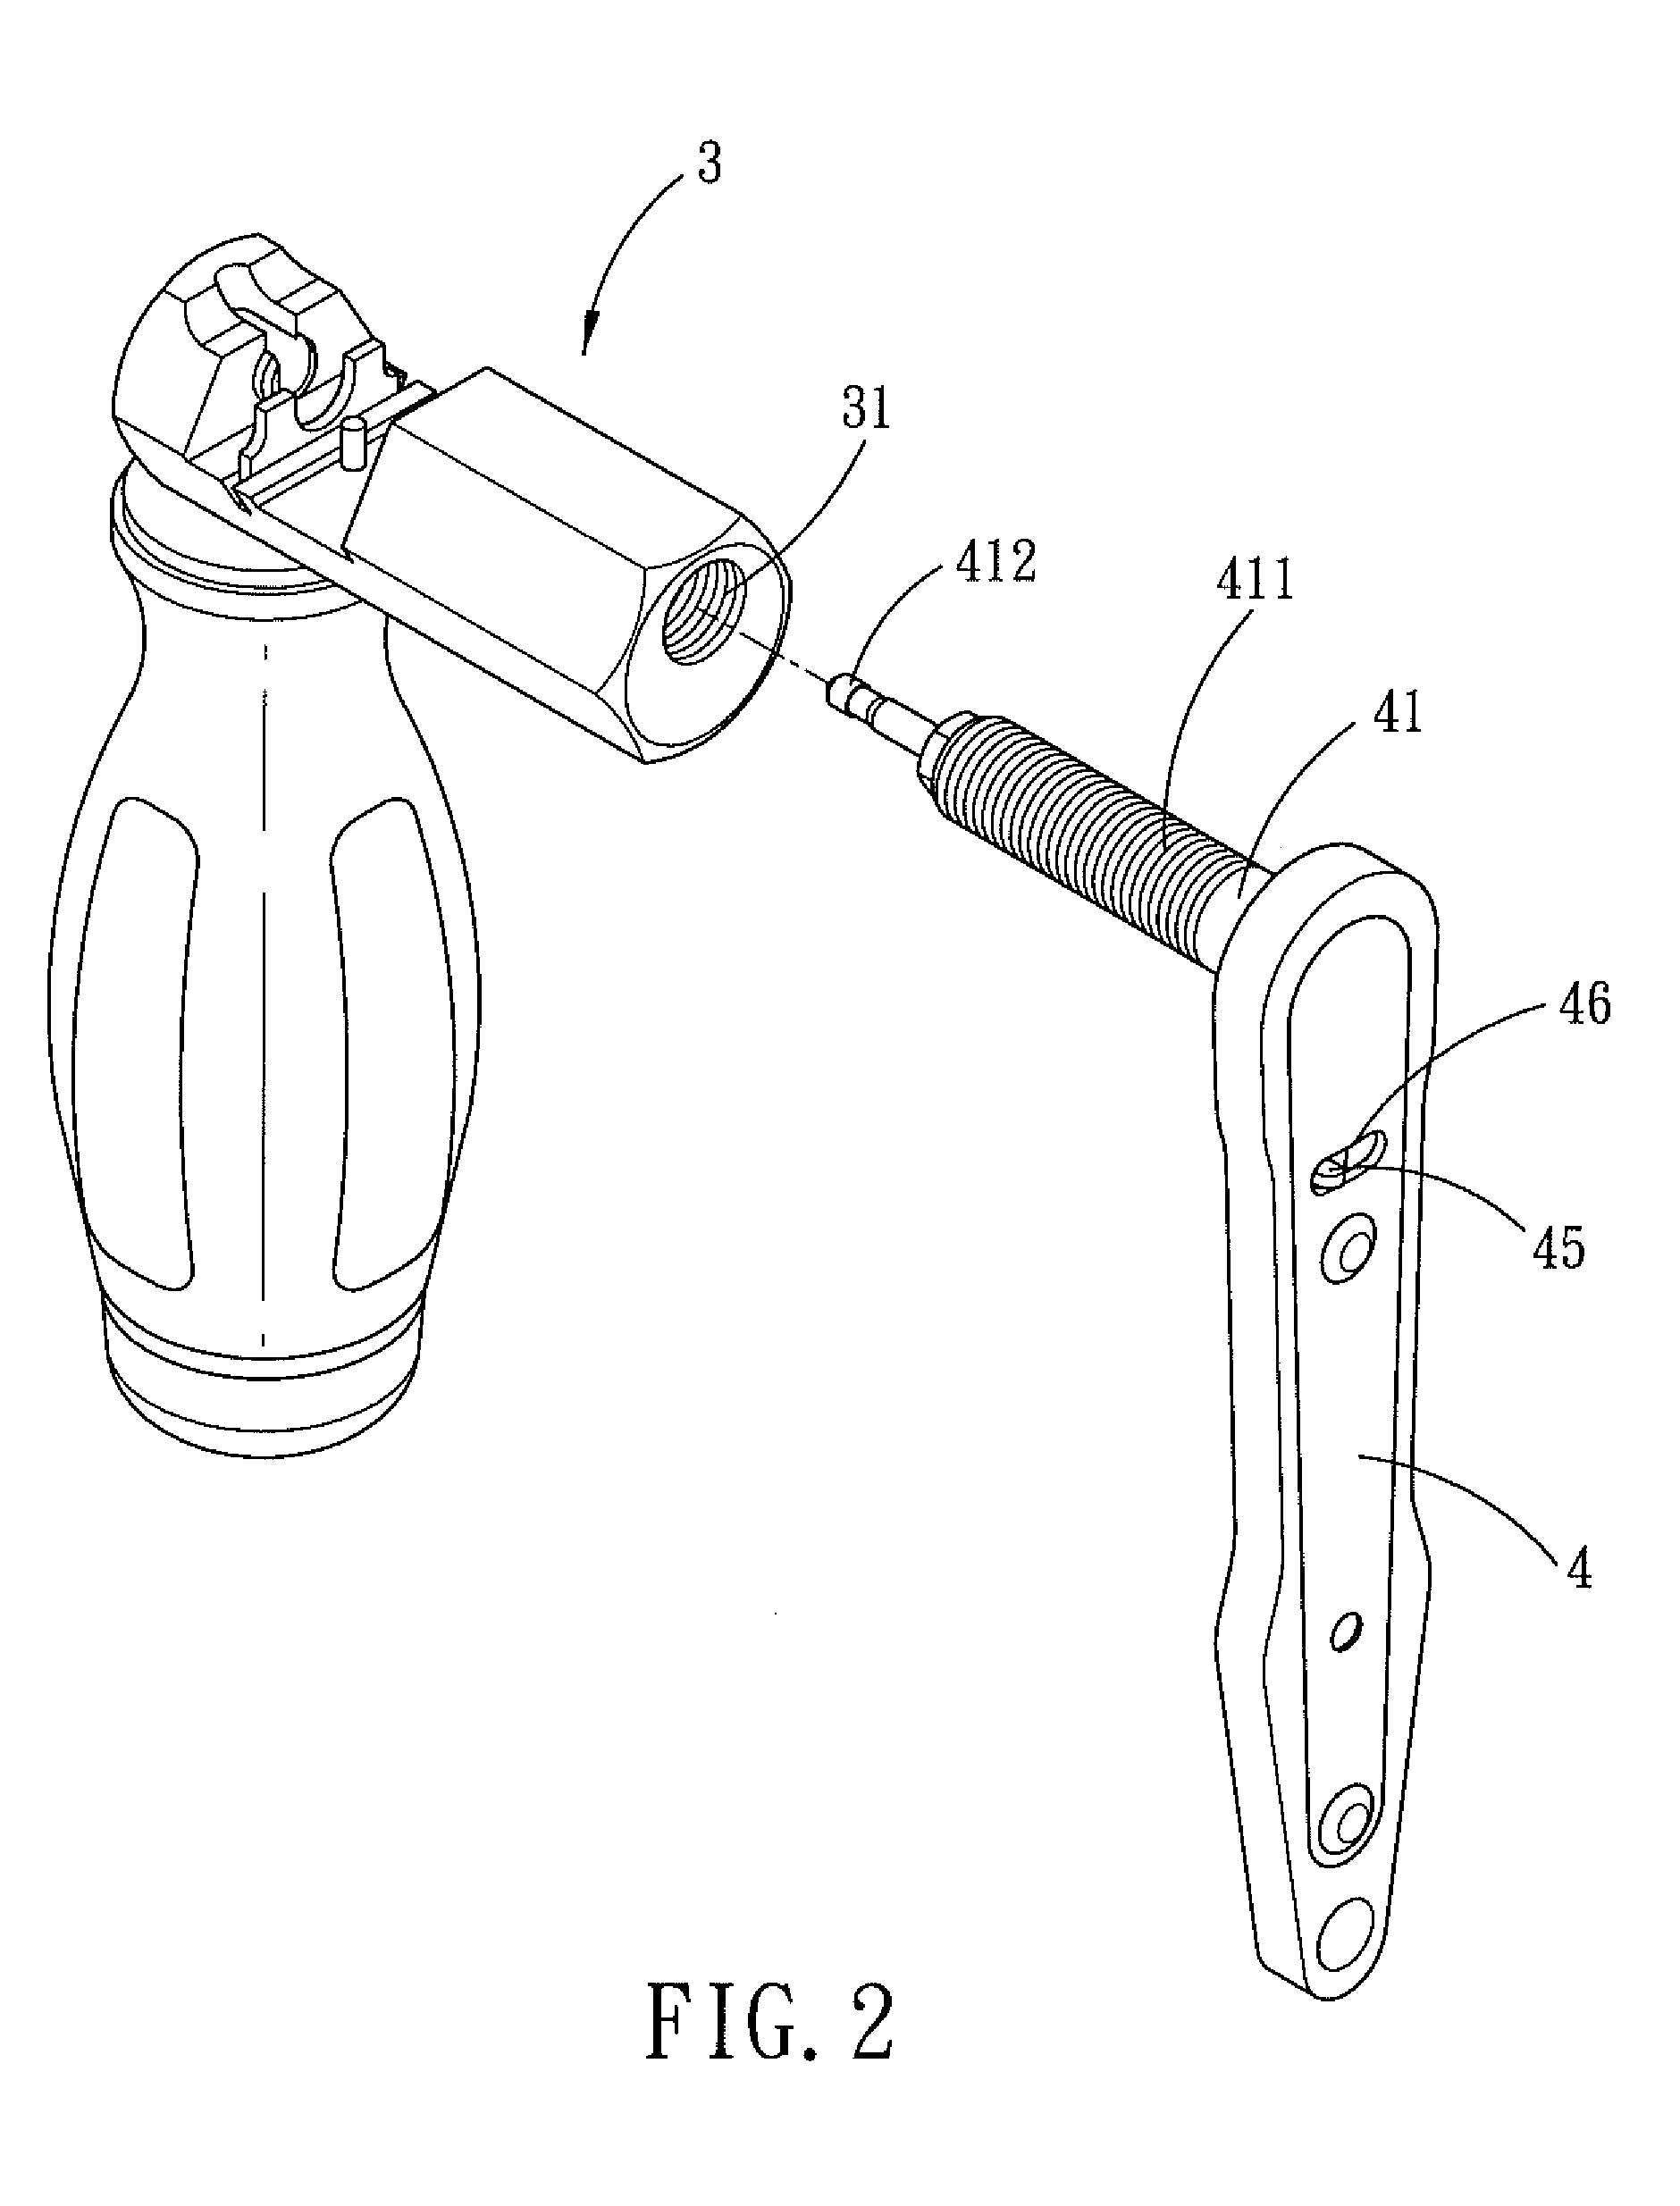 Ratchet arrangement for a chain splitter